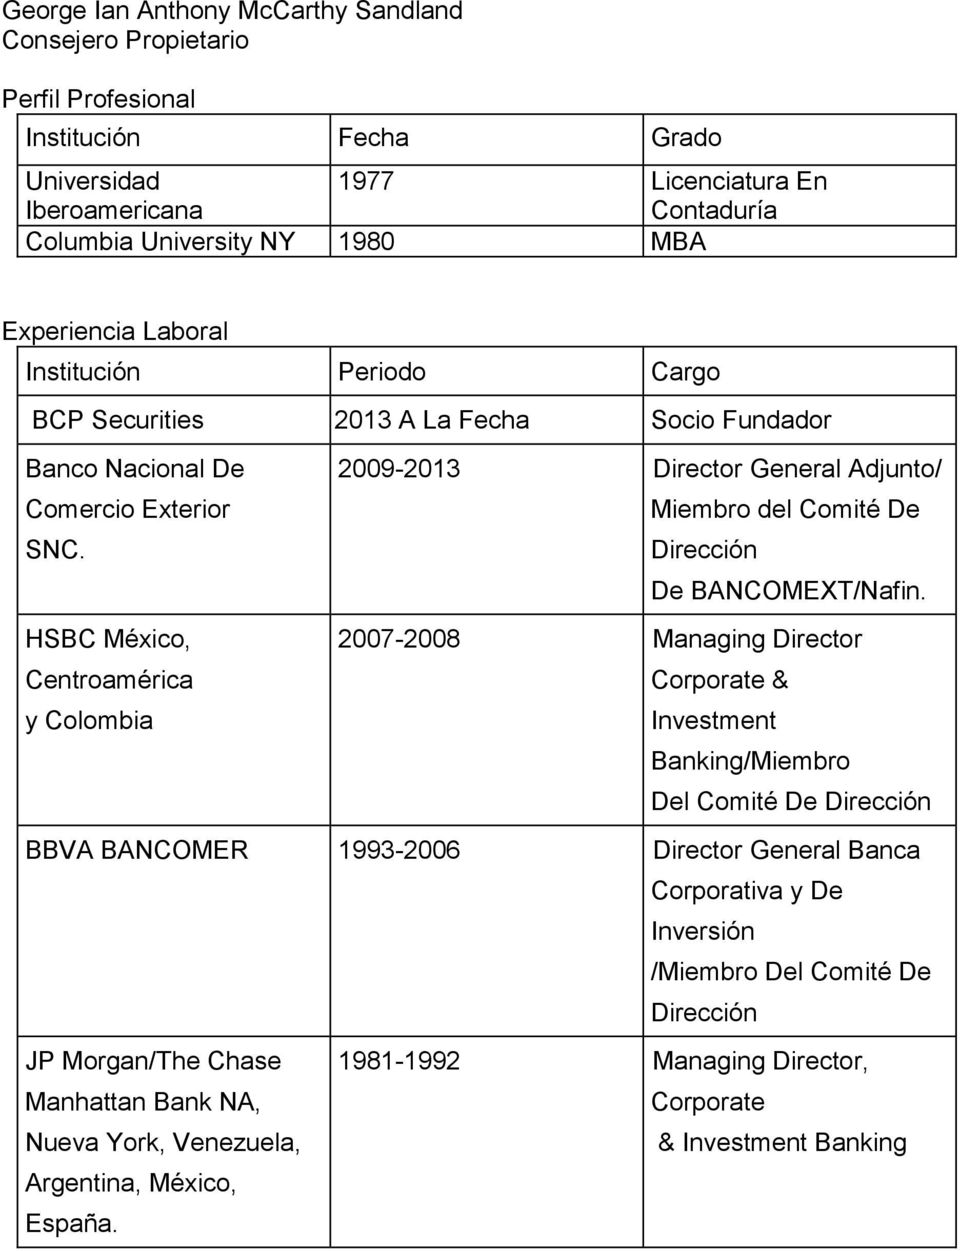 HSBC México, Centroamérica y Colombia 2007-2008 Managing Director Corporate & Investment Banking/Miembro Del Comité De Dirección BBVA BANCOMER 1993-2006 Director General Banca